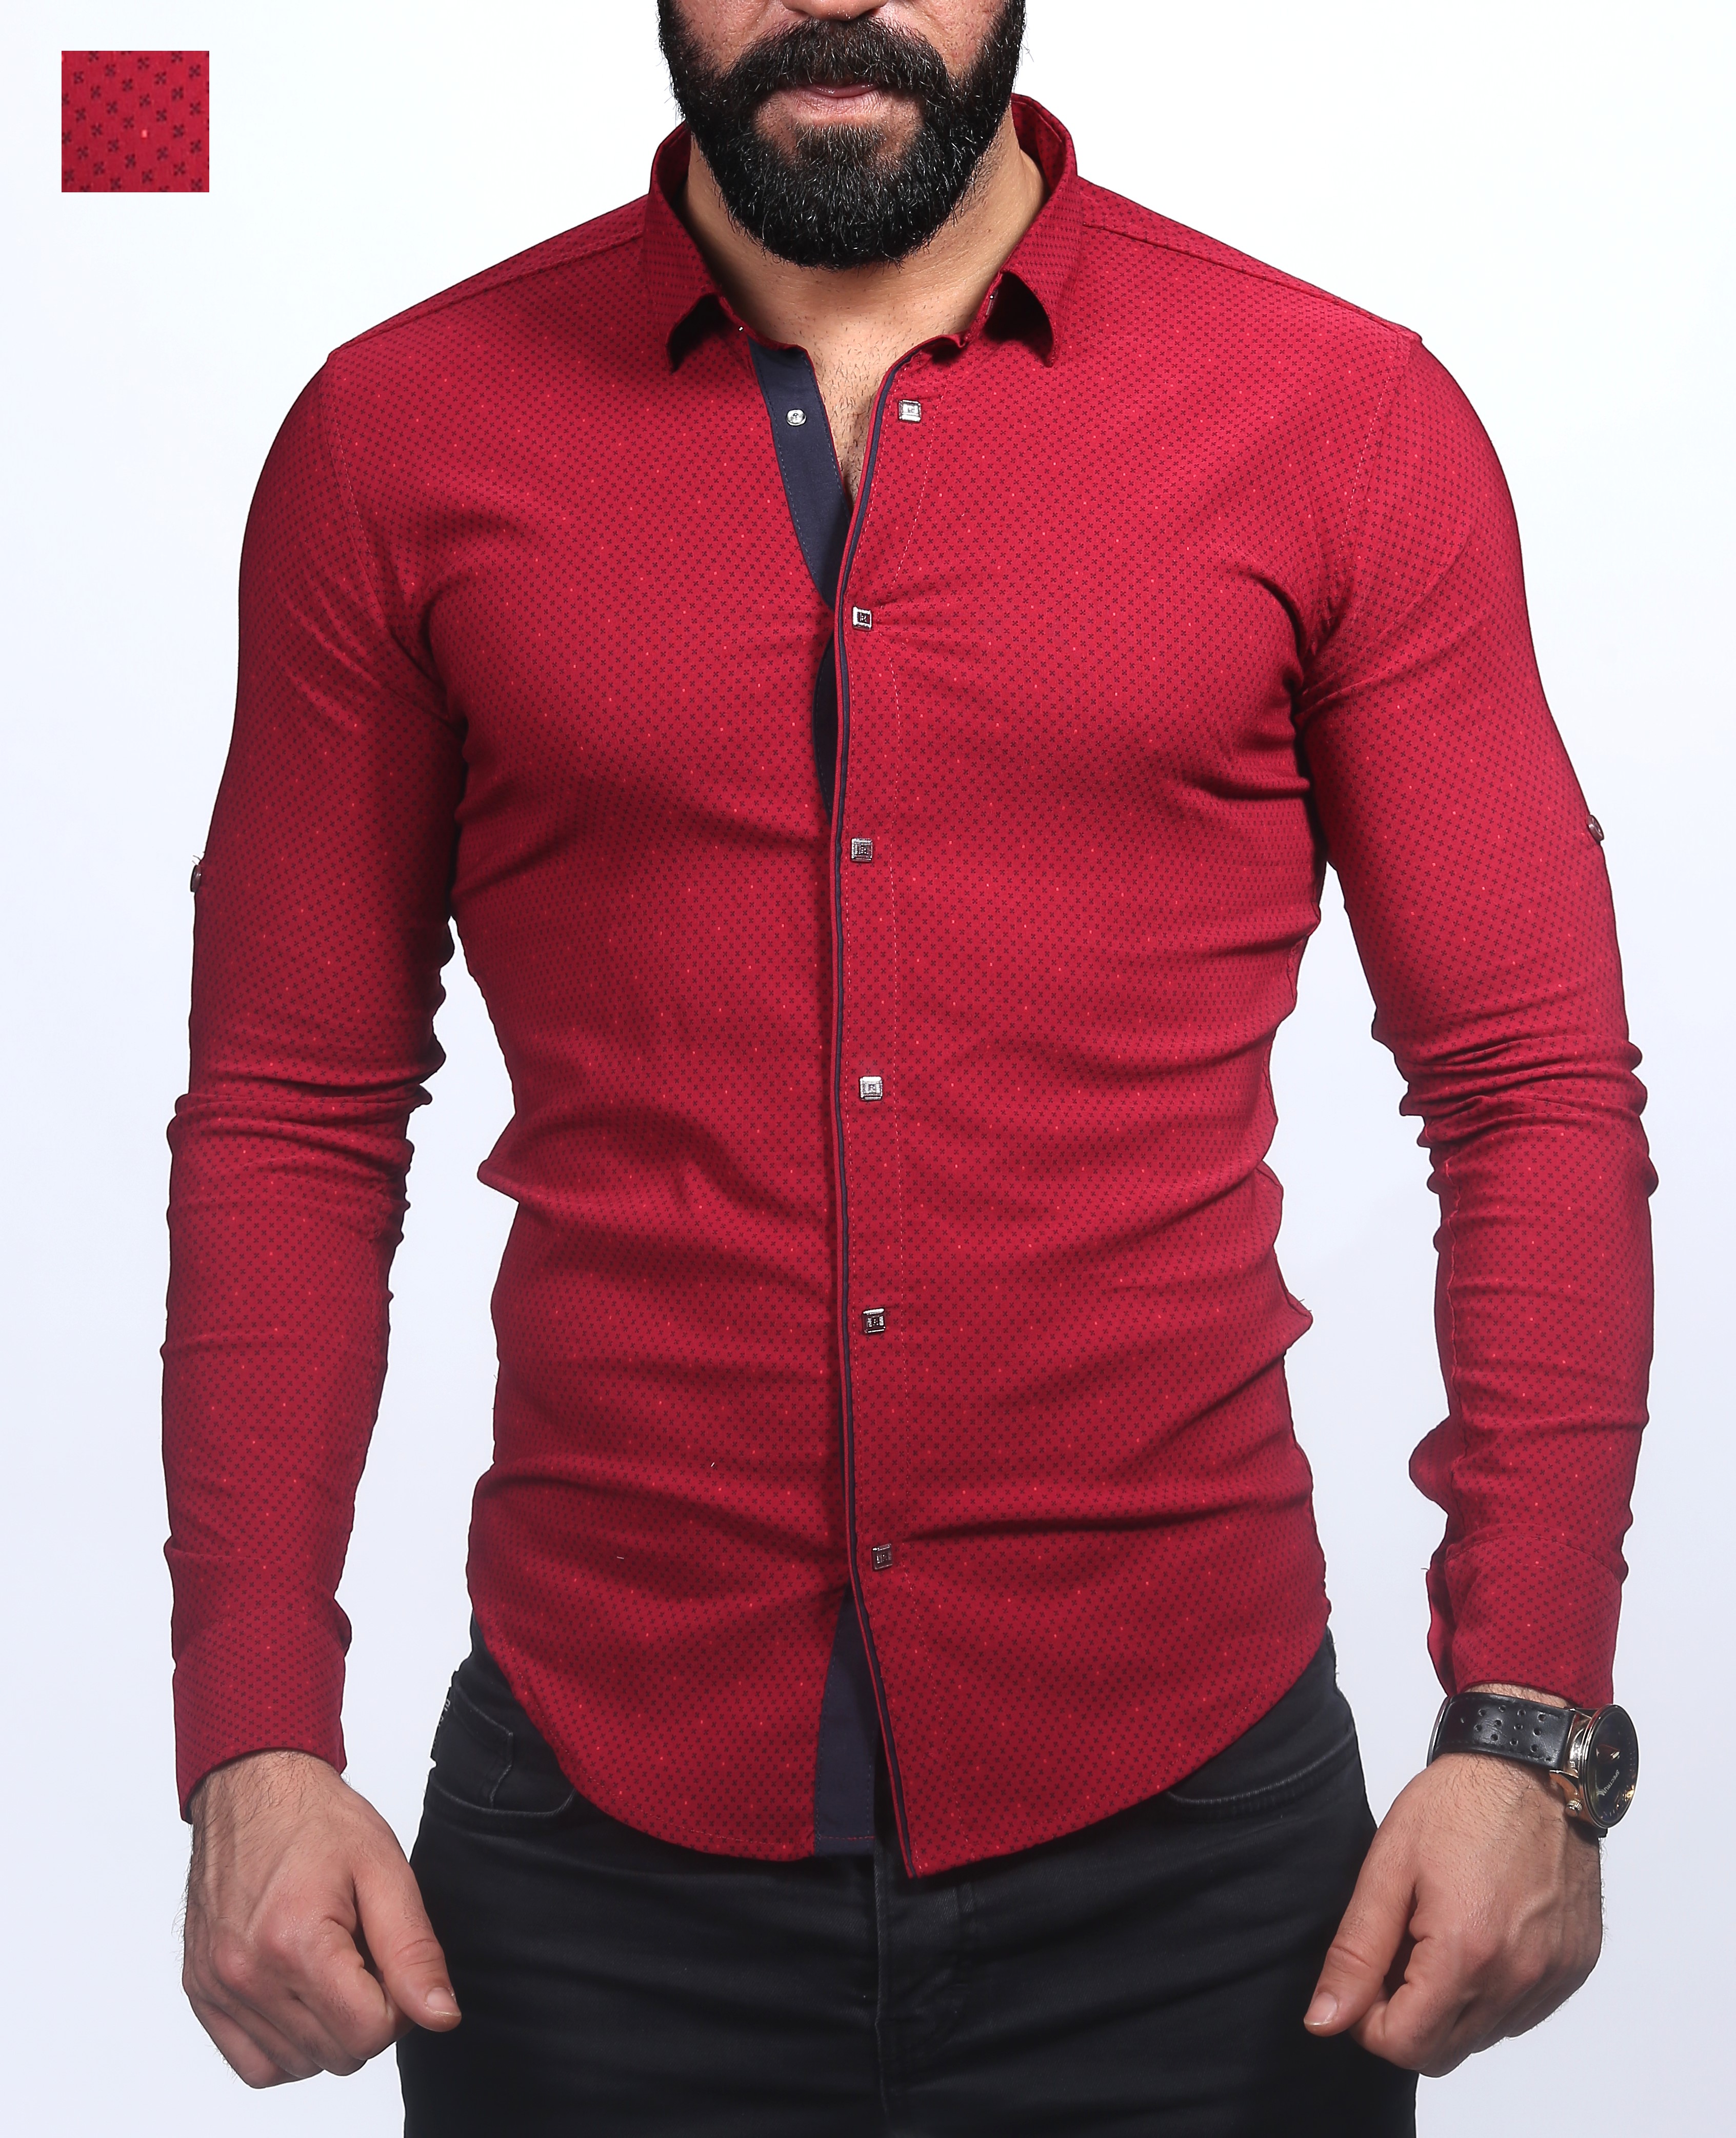 Рубашка мужская турция купить. Турецкие рубашки мужские. Рубашка мужская красная. Мужчина в красной рубашке. Турецкие рубашки мужской одежды.